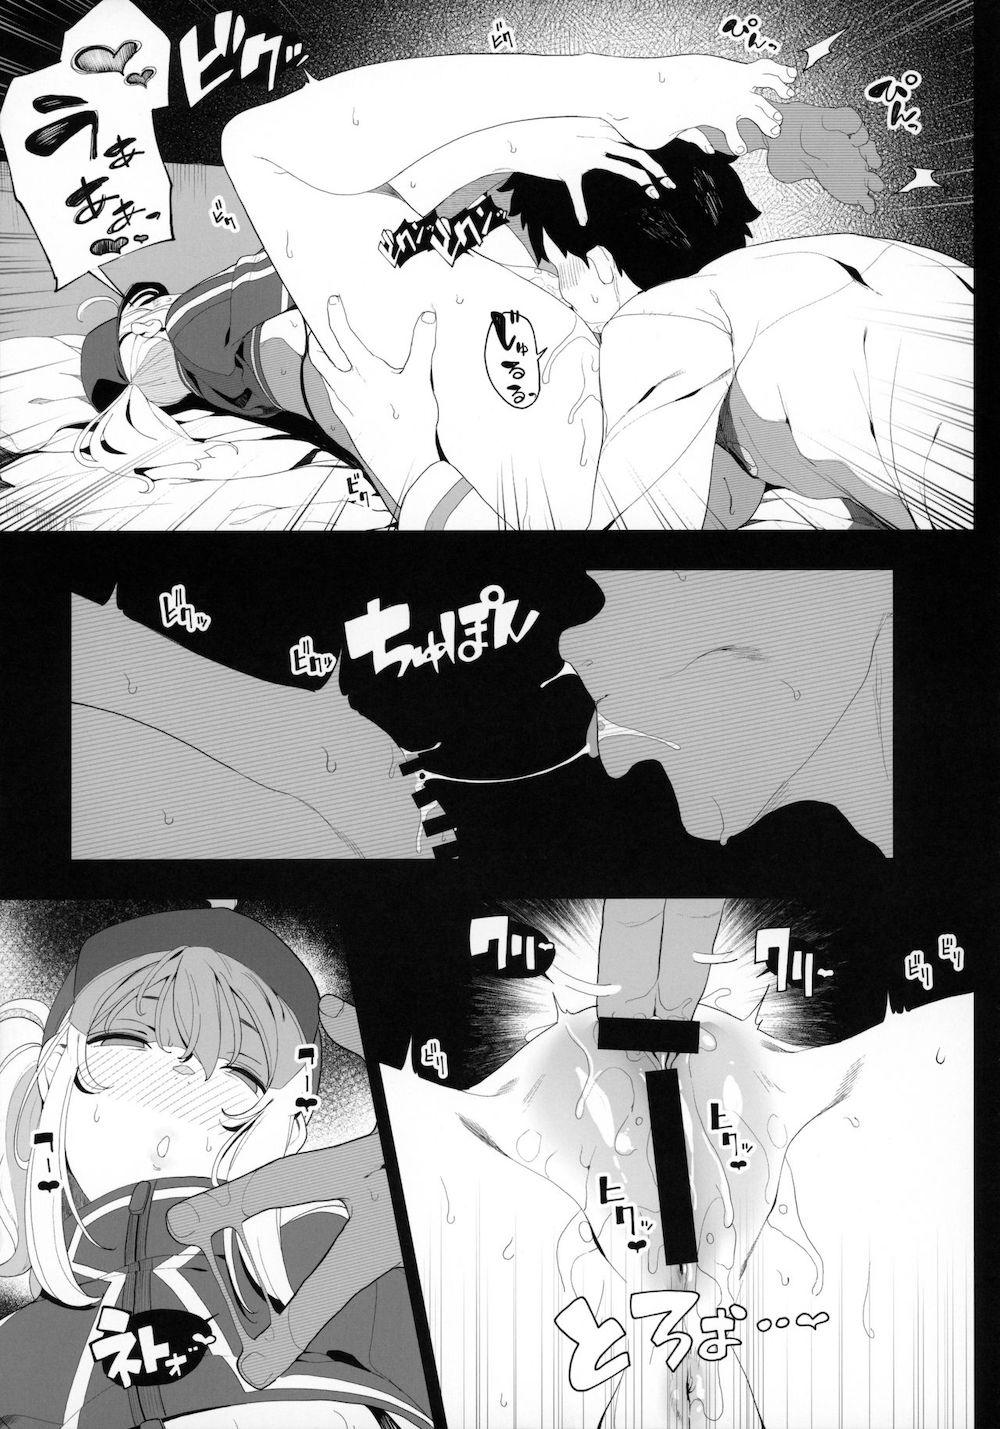 【Fate/Grand Order】酔い潰れて眠ってしまった謎のヒロインXXが欲情してカラダを触ってくるマスターに指導として女性優位な泥酔エッチ40